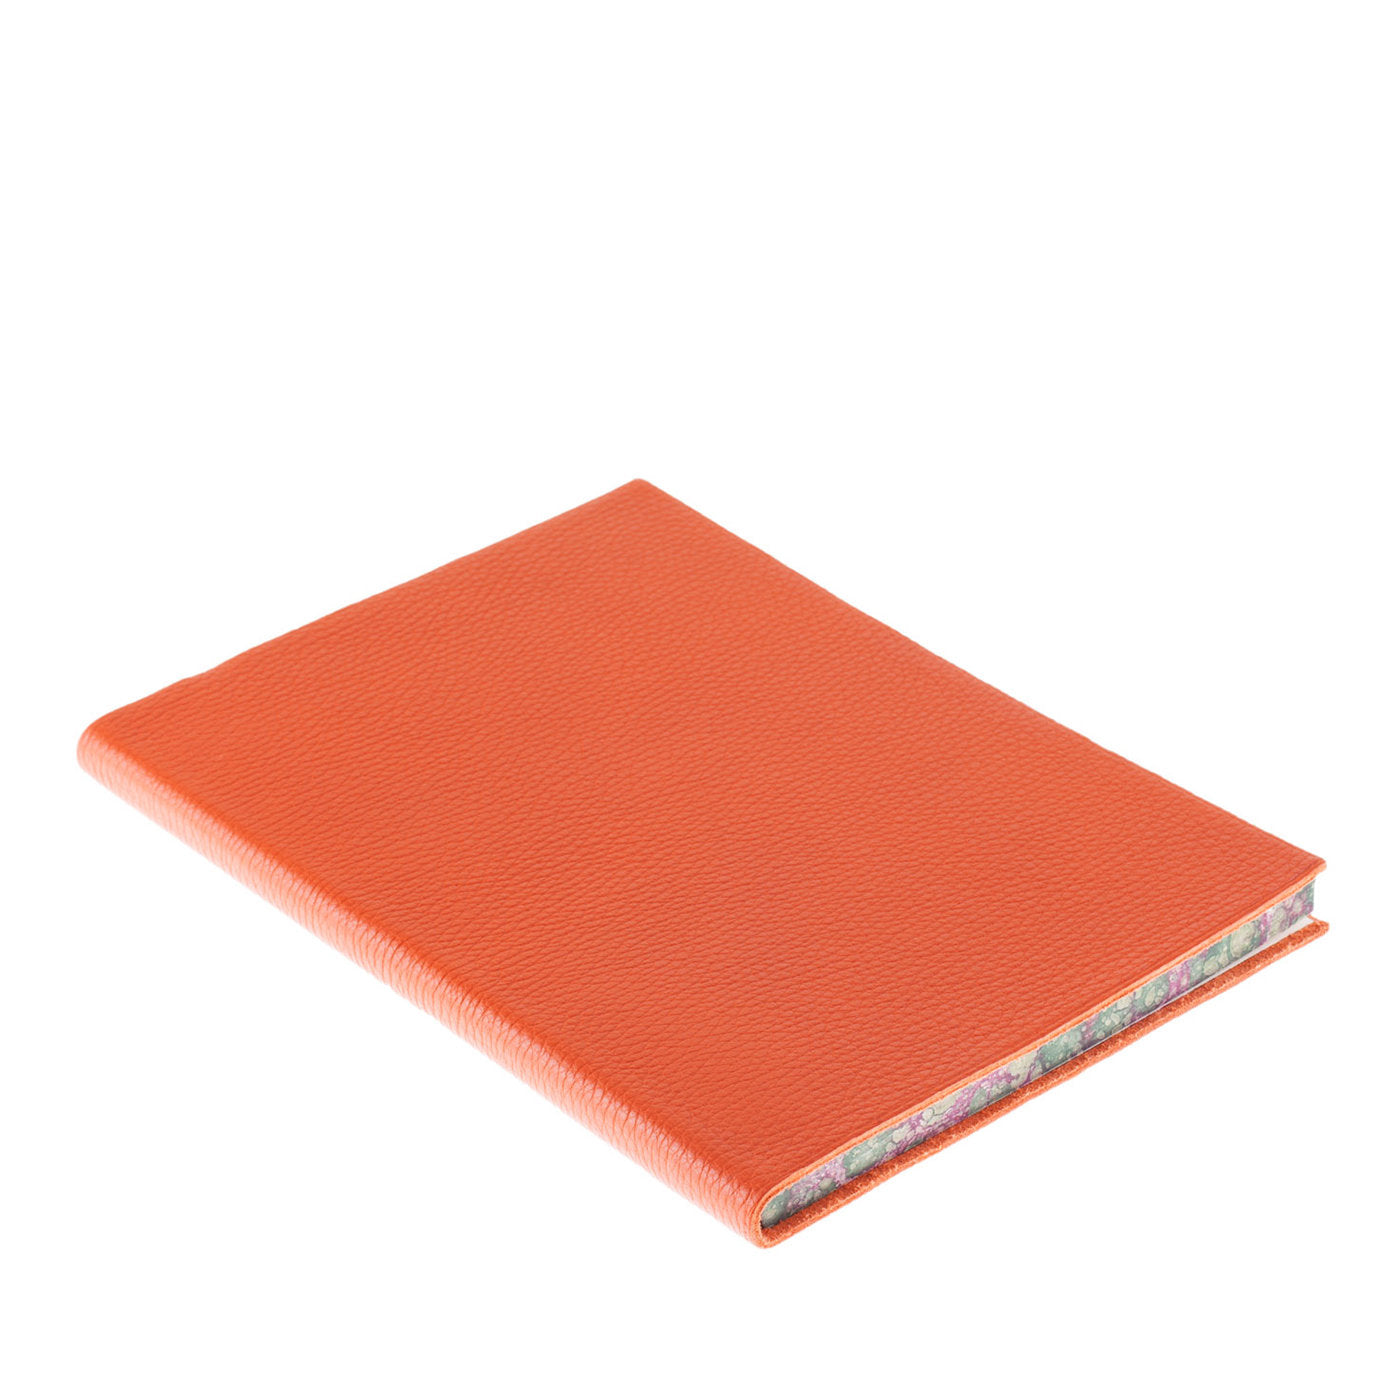 Cuaderno de cuero naranja - Vista principal